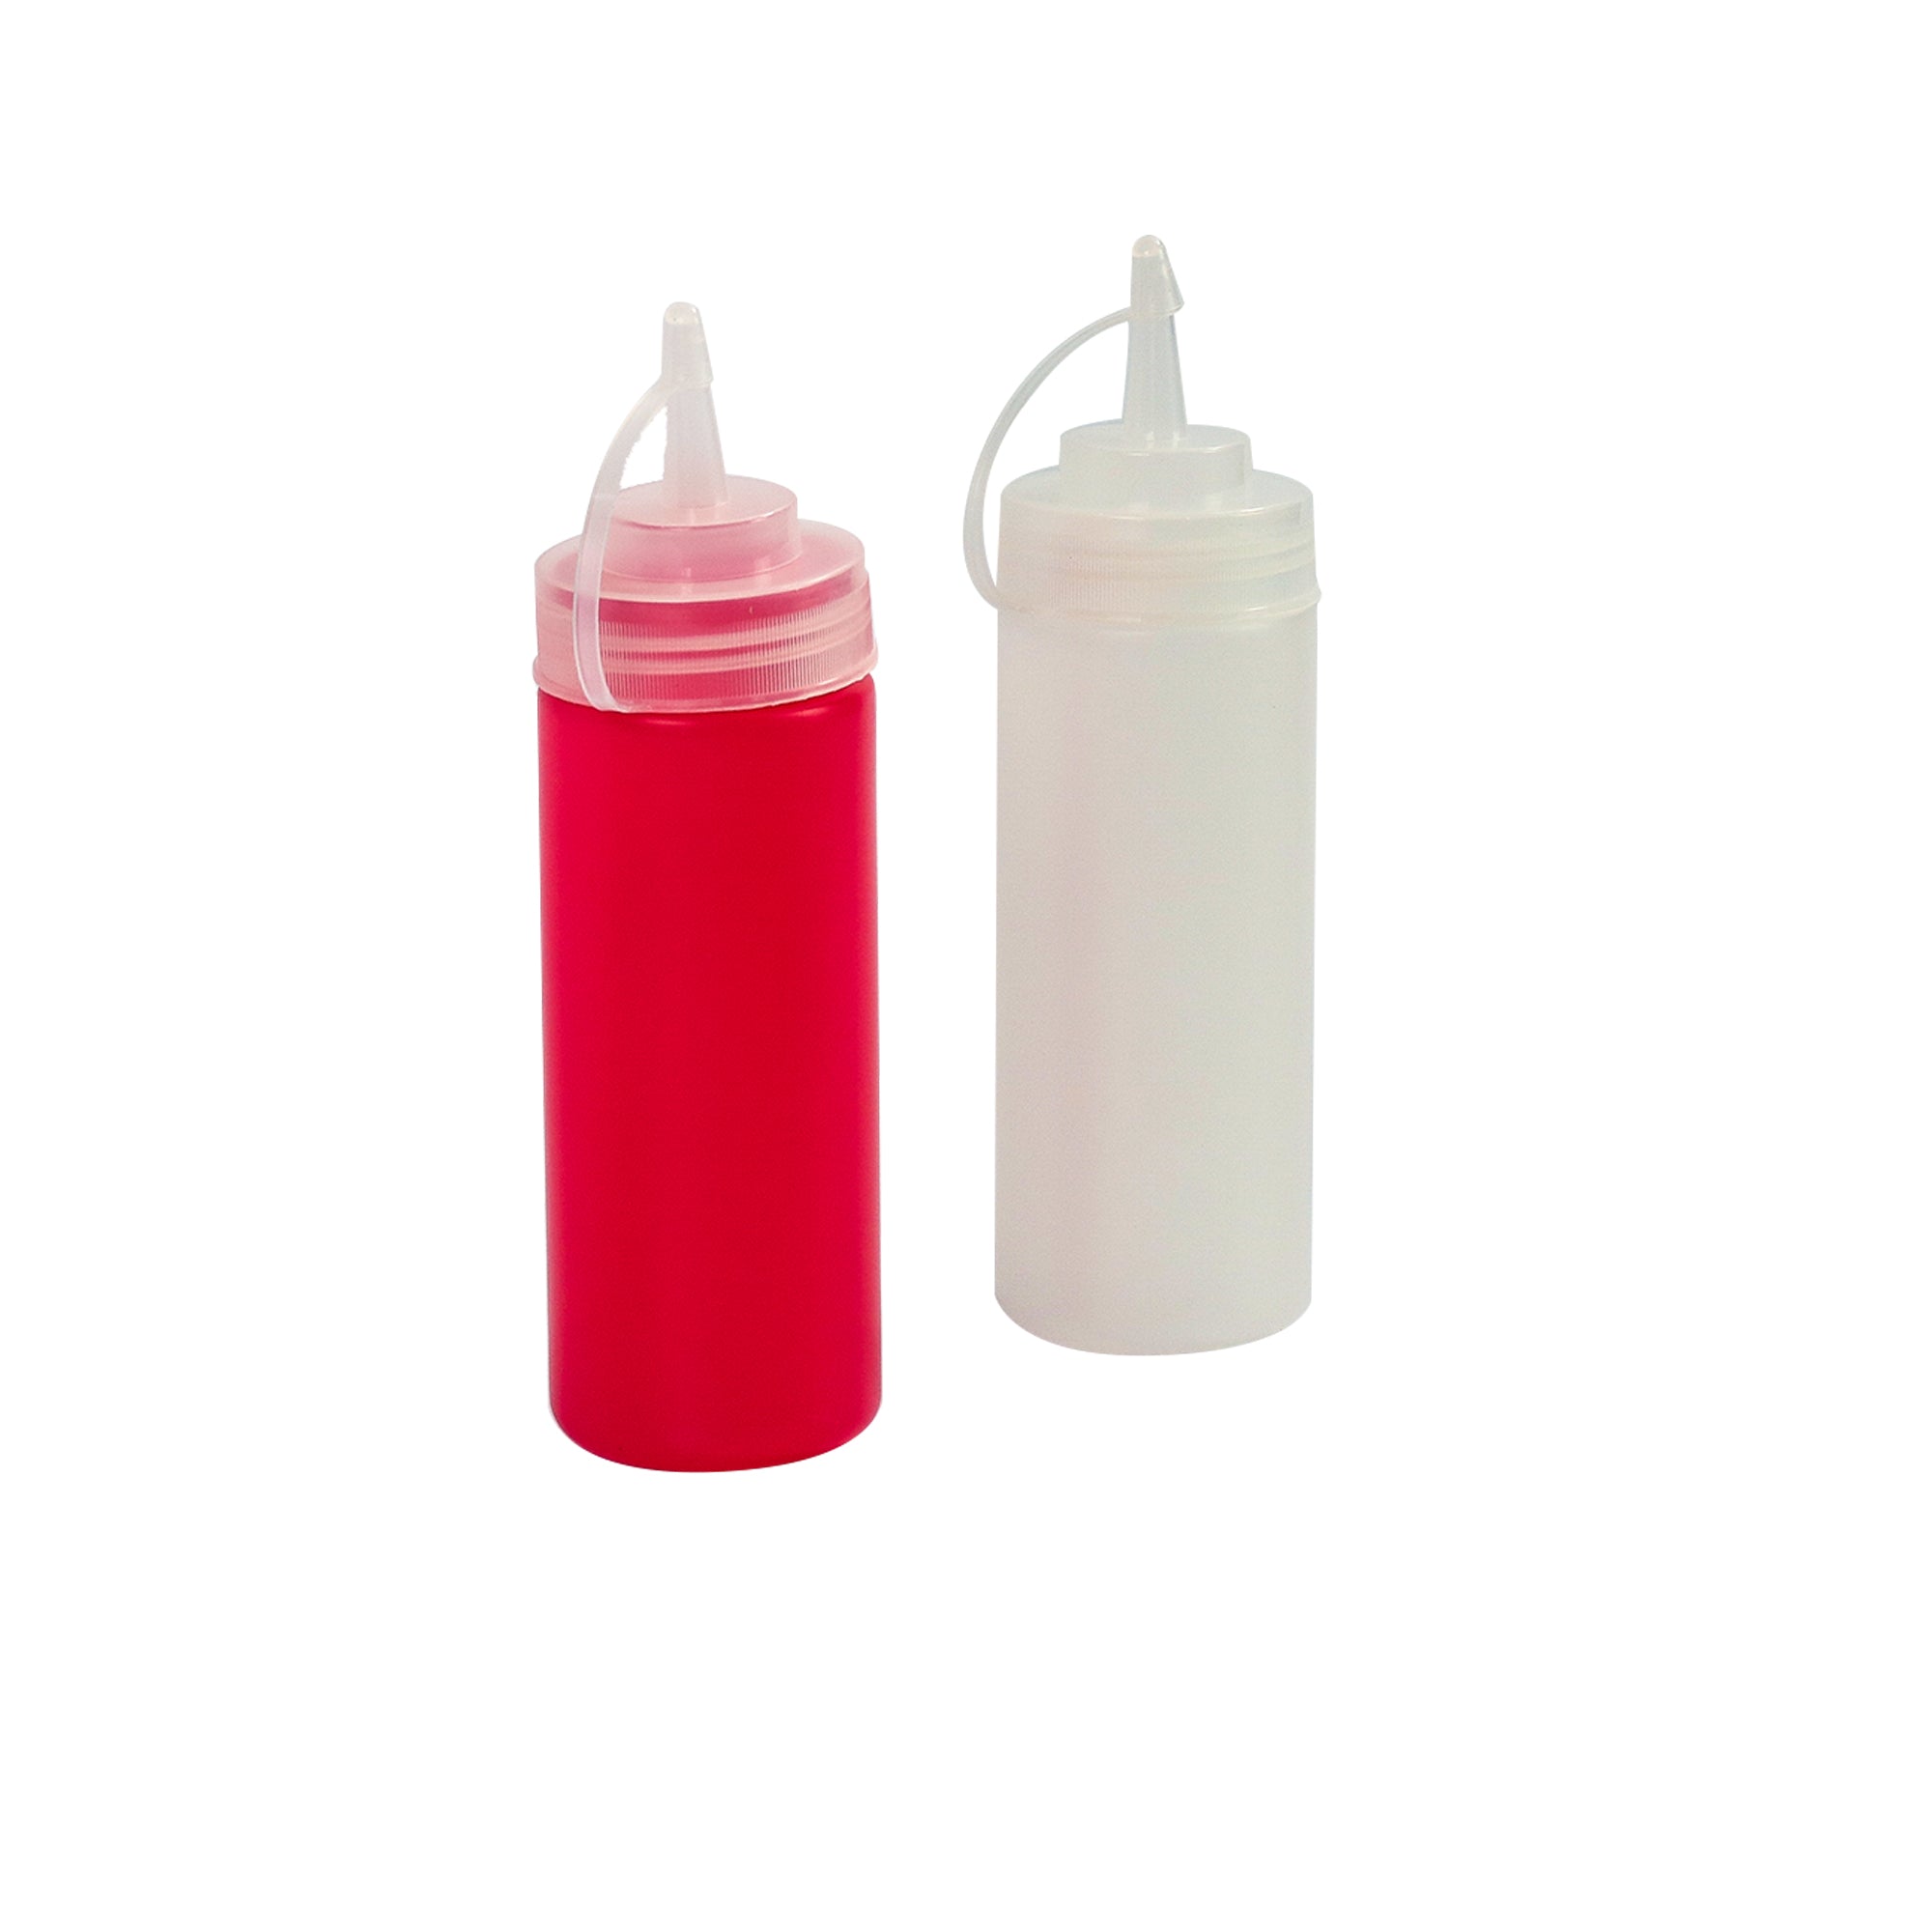 Plastic Squeeze Sauce Bottle 2pcs